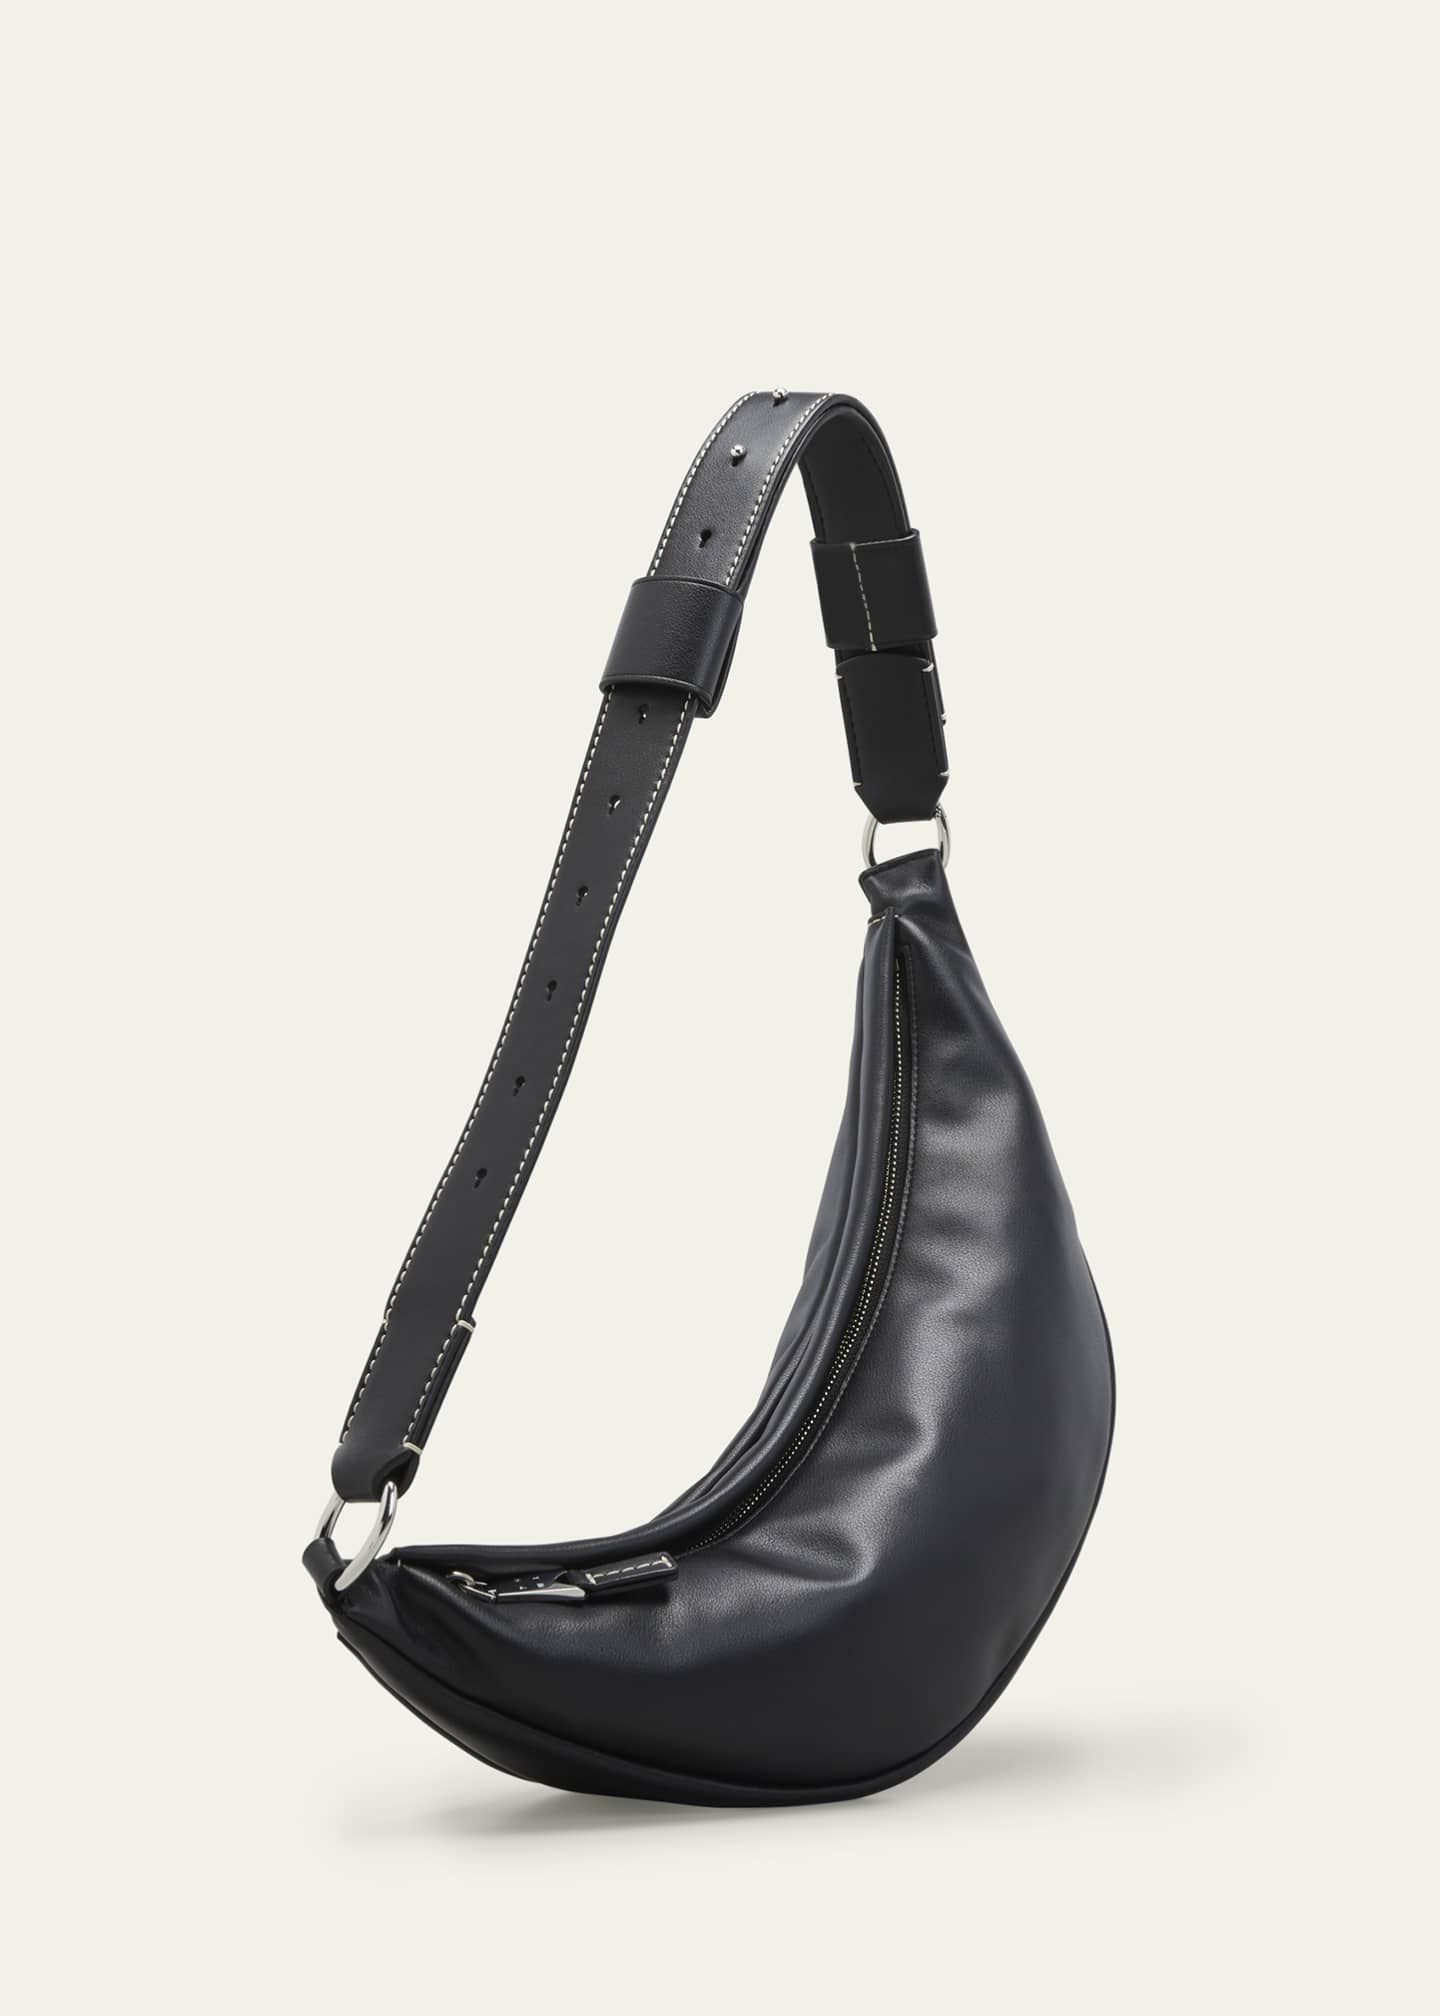 Proenza Schouler White Label Stanton Leather Sling Shoulder Bag ...